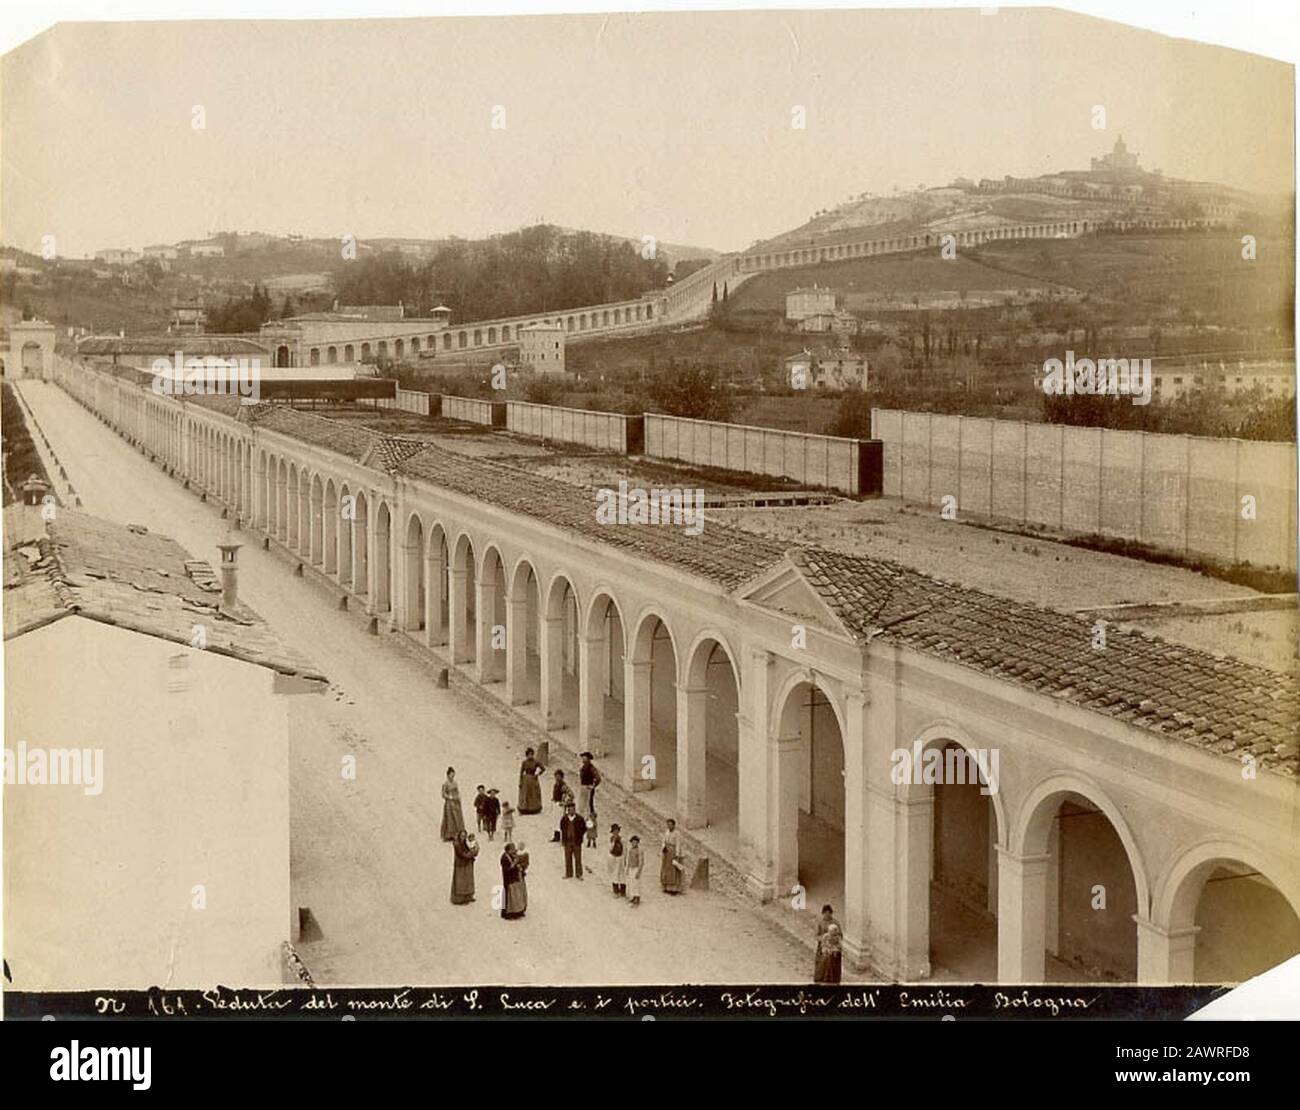 Fotografia dell'Emilia - n. 161 - Bologna - Veduta del monte di S. Luca e i portici. Stock Photo